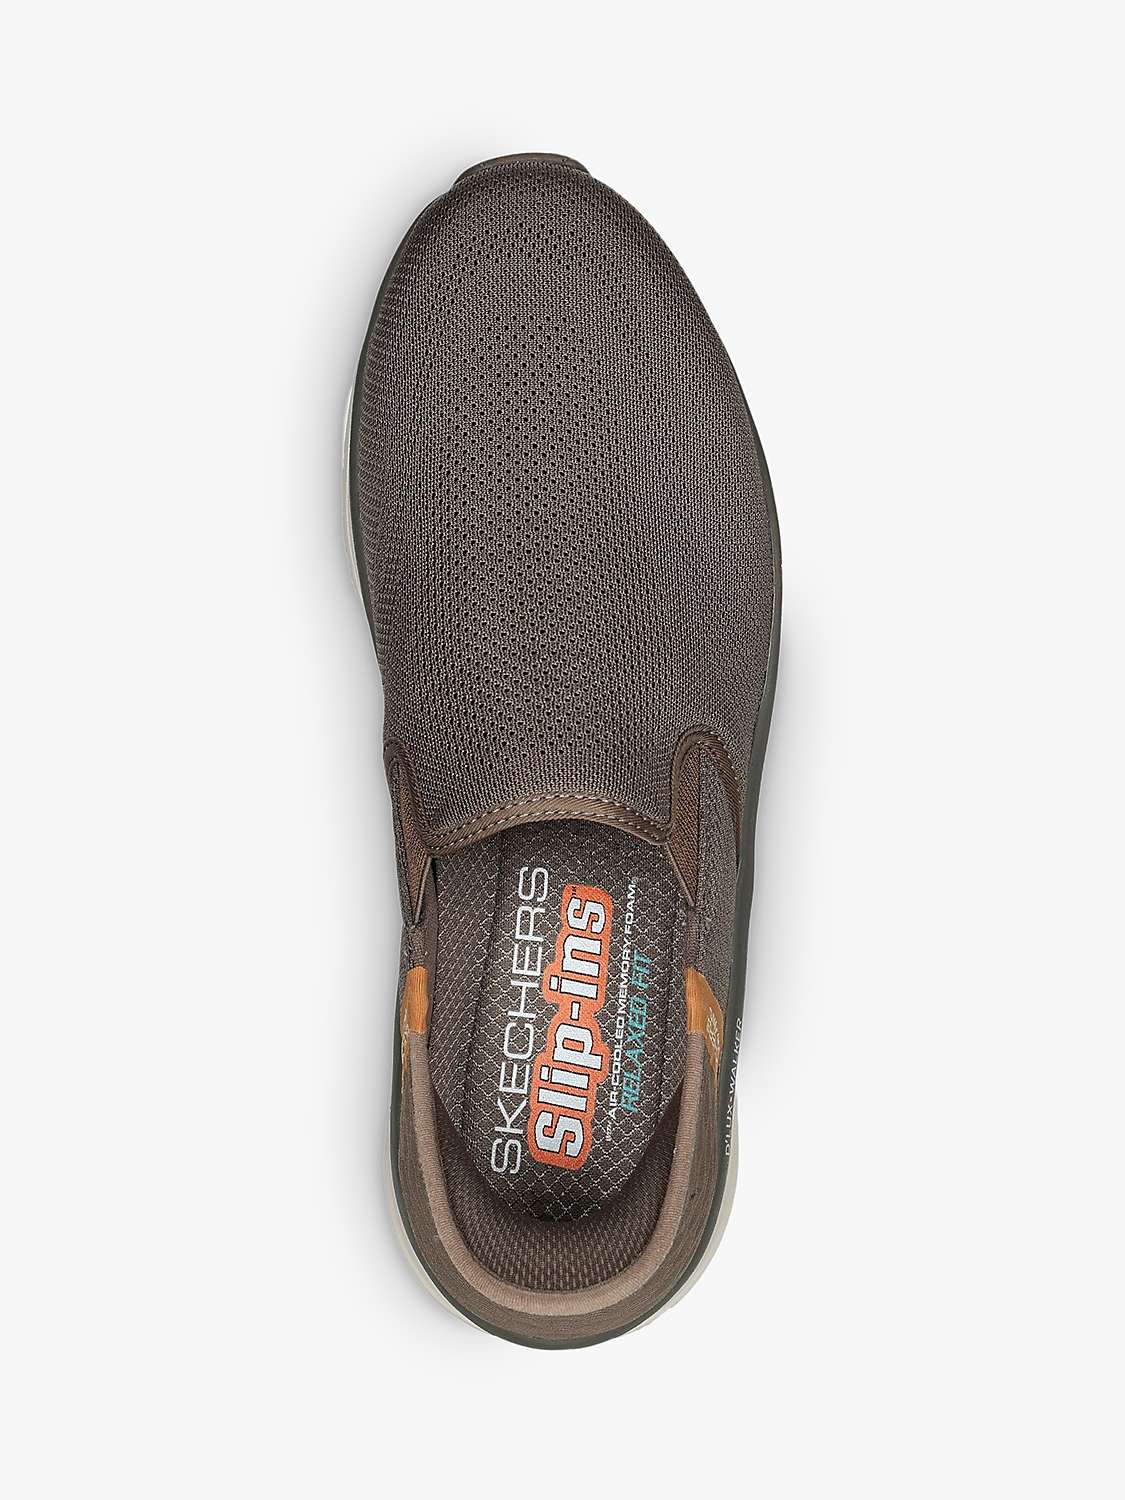 Buy Skechers D'Lux Walker Orford Slip-On Shoes Online at johnlewis.com